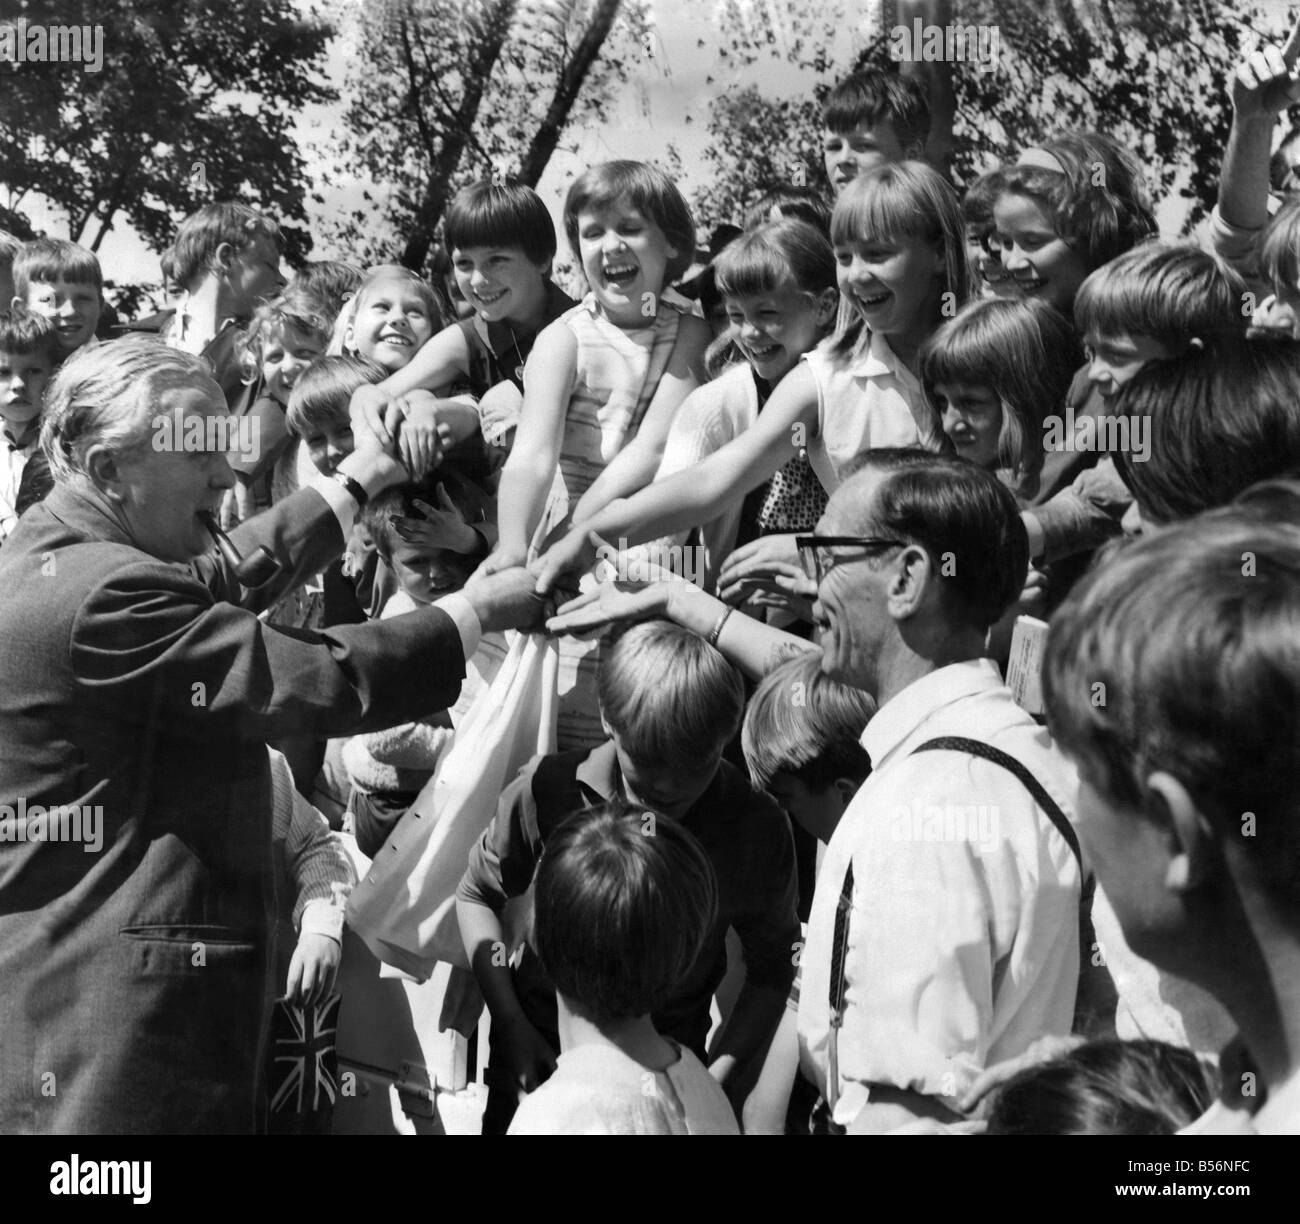 Les mineurs du Yorkshire Gala. Harold Wilson répond à certains des enfants de mineur à l'assemblée annuelle et Gala de démonstration mineurs du Yorkshire, à Wakefield. Juin 1967 P009866 Banque D'Images